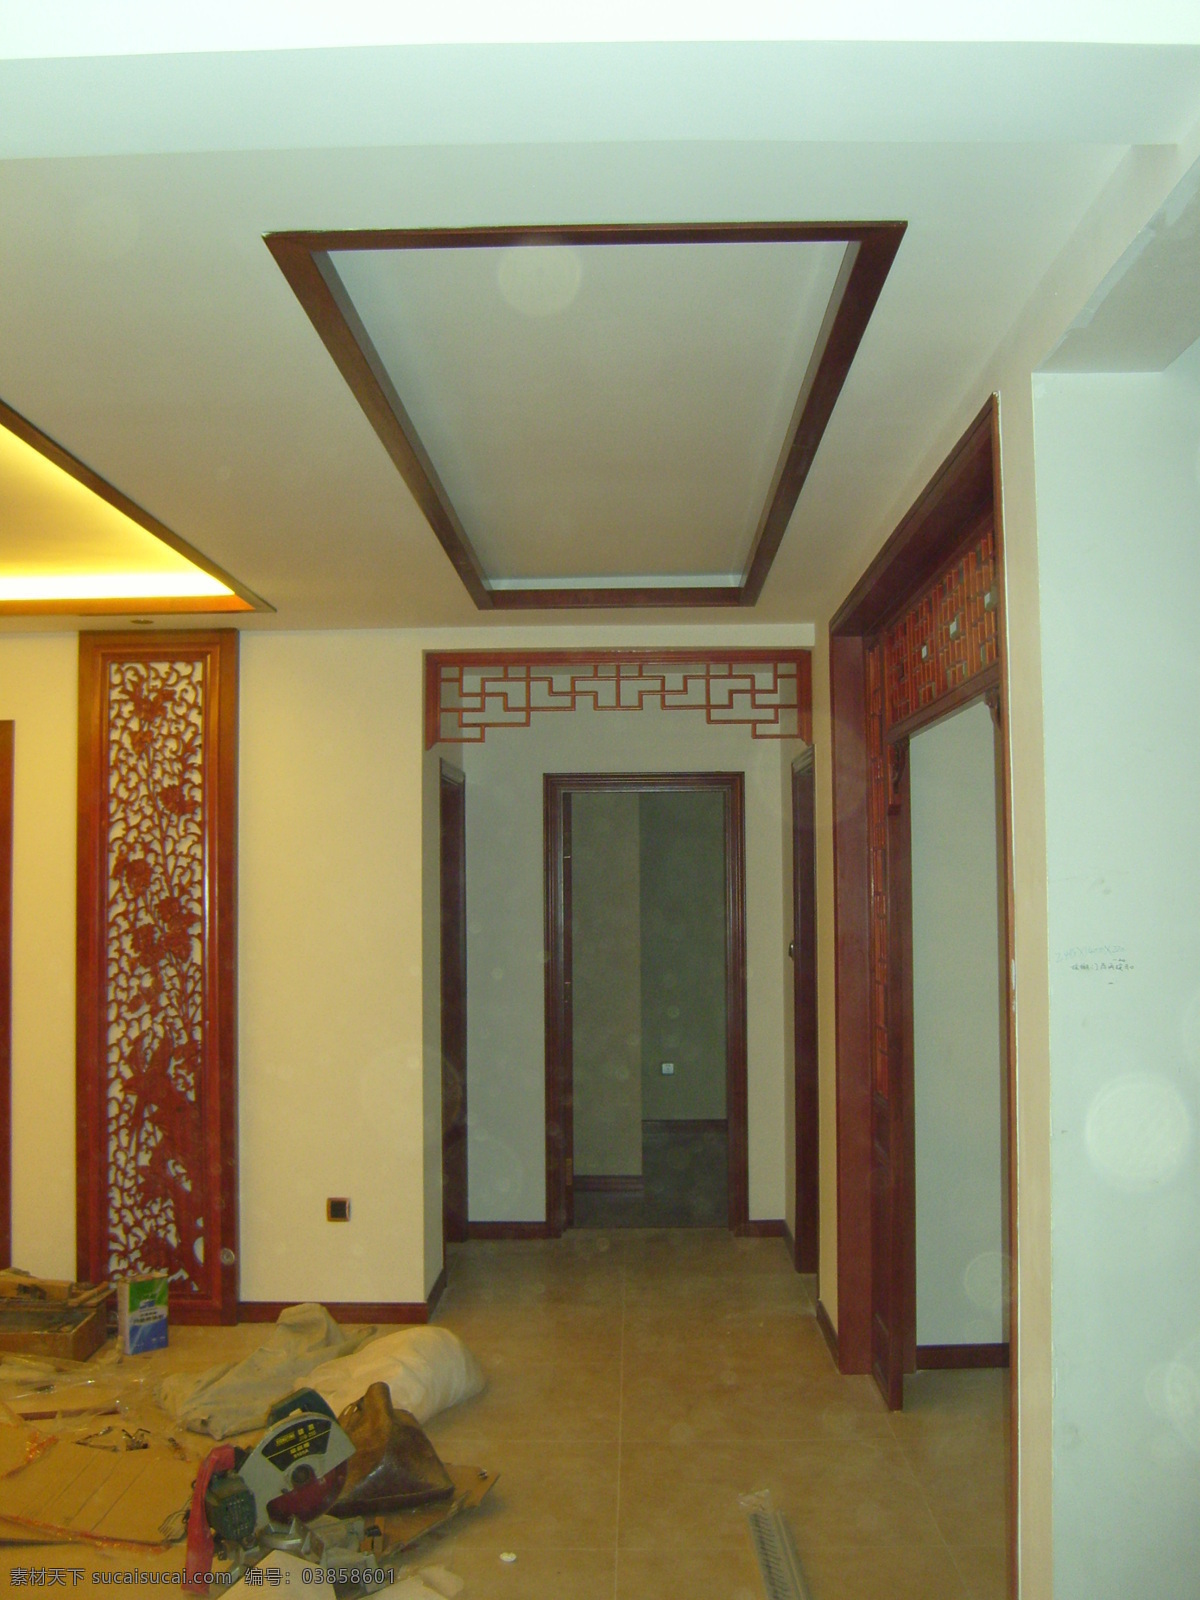 中式走廊 玄关 影视墙 花格 中式拱门 环境设计 室内设计